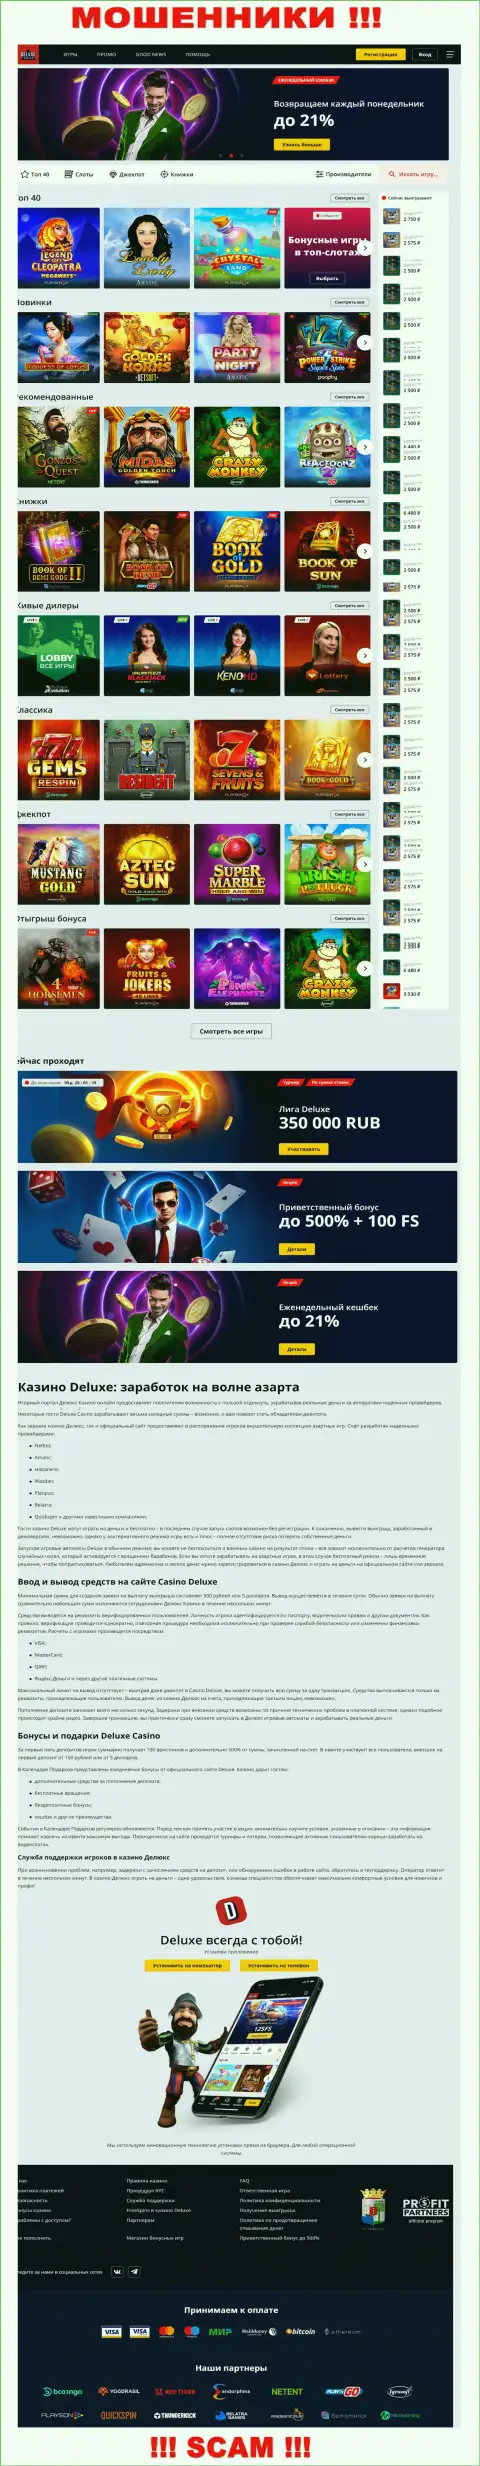 Официальная internet-страница компании Deluxe Casino